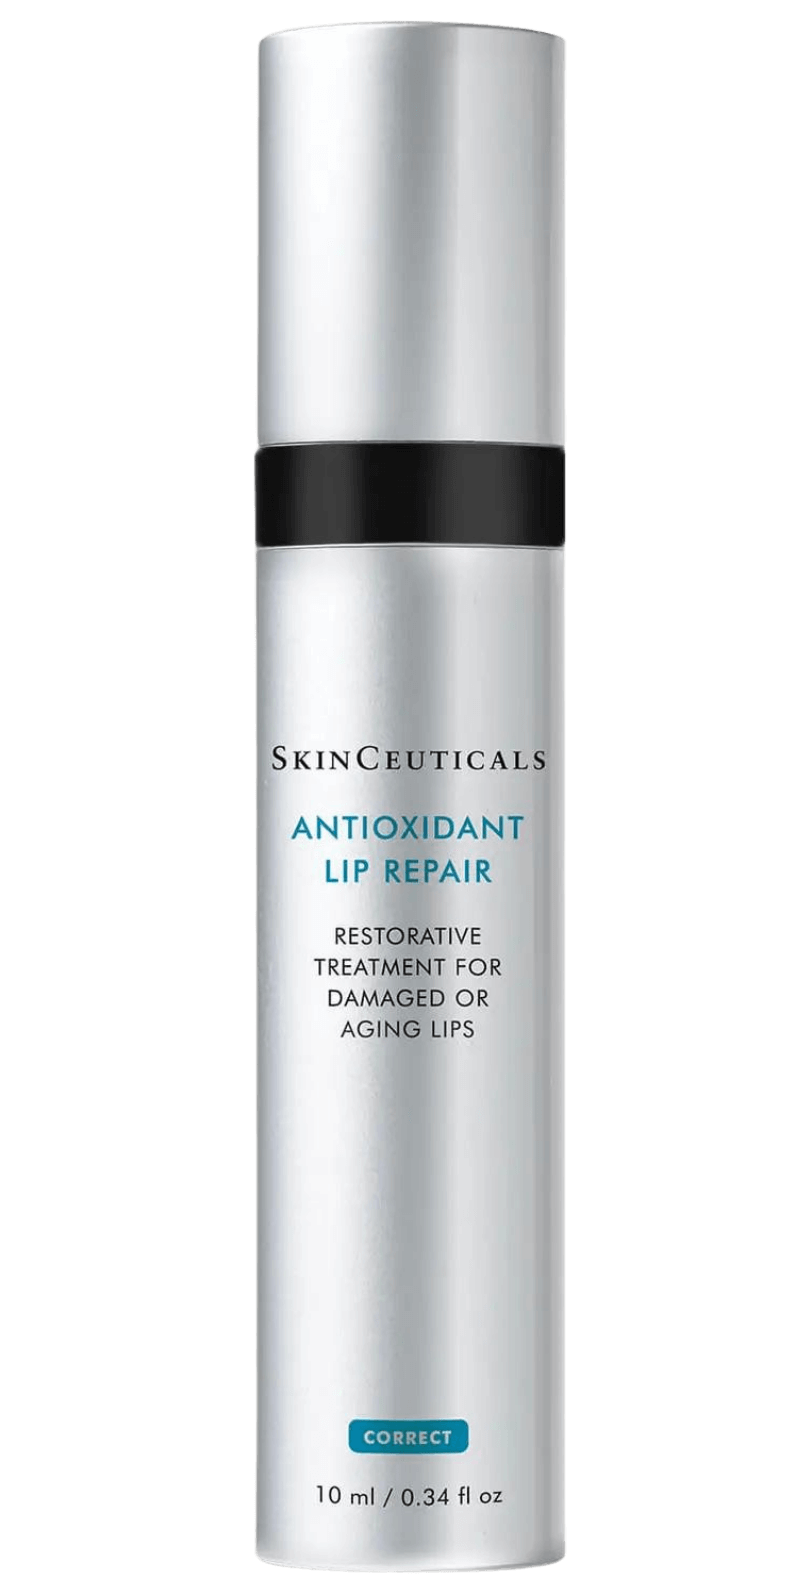 's SkinCeuticals Antioxidant Lip Repair - Bellini's Skin and Parfumerie 